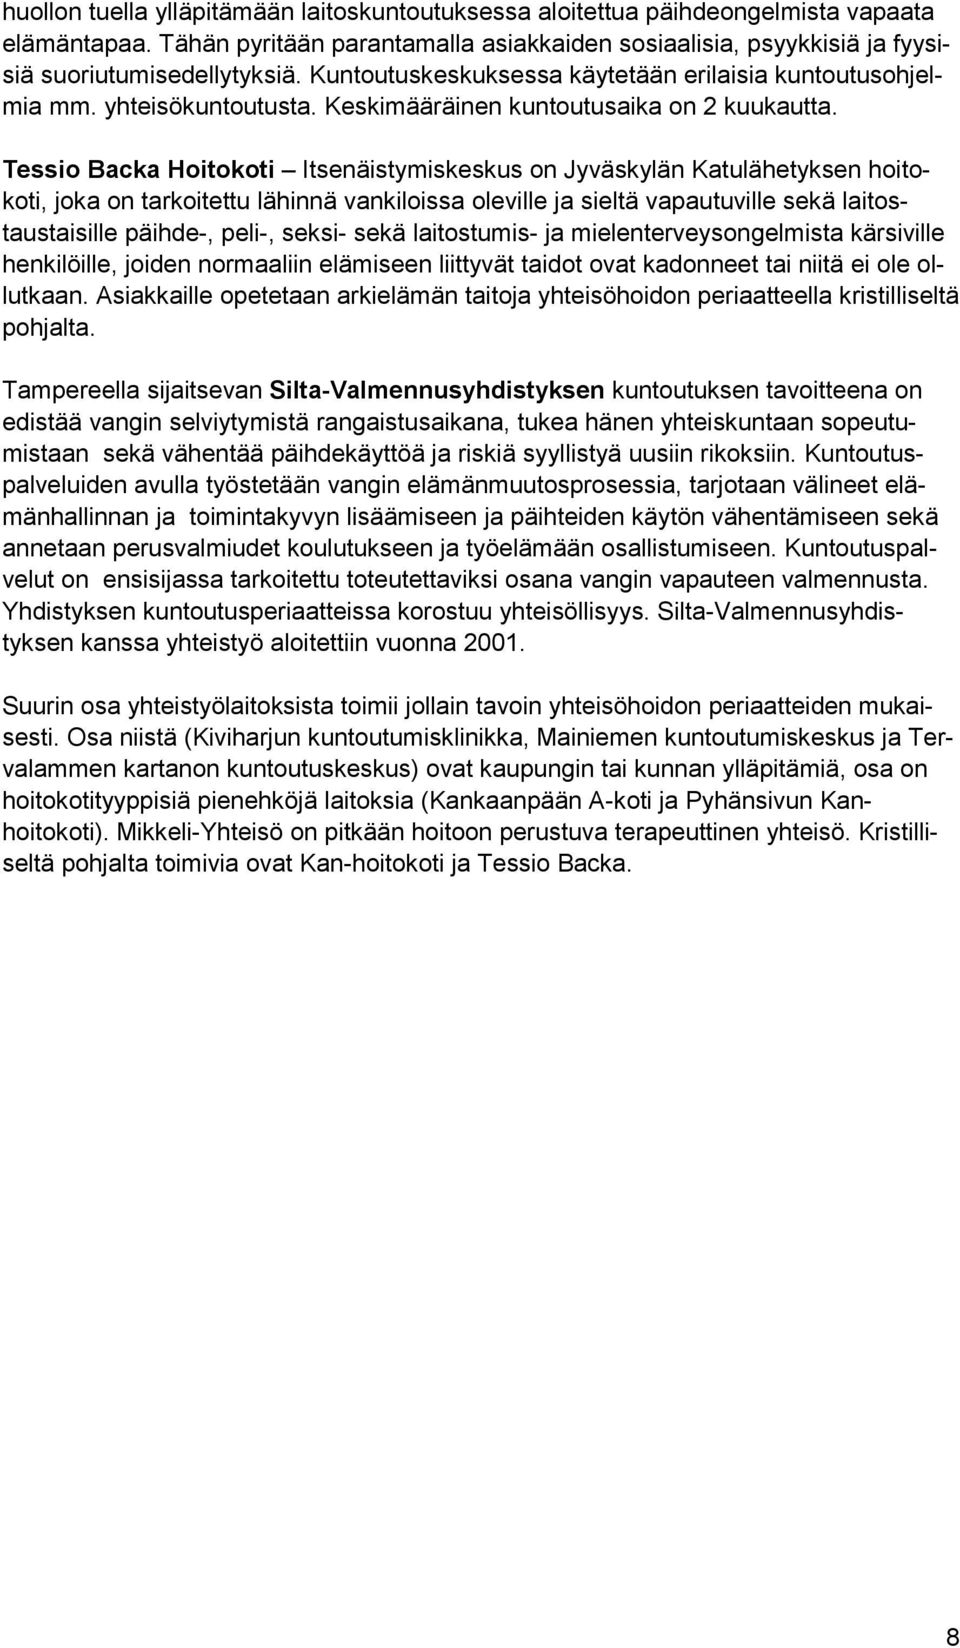 Tessio Backa Hoitokoti Itsenäistymiskeskus on Jyväskylän Katulähetyksen hoitokoti, joka on tarkoitettu lähinnä vankiloissa oleville ja sieltä vapautuville sekä laitostaustaisille päihde-, peli-,